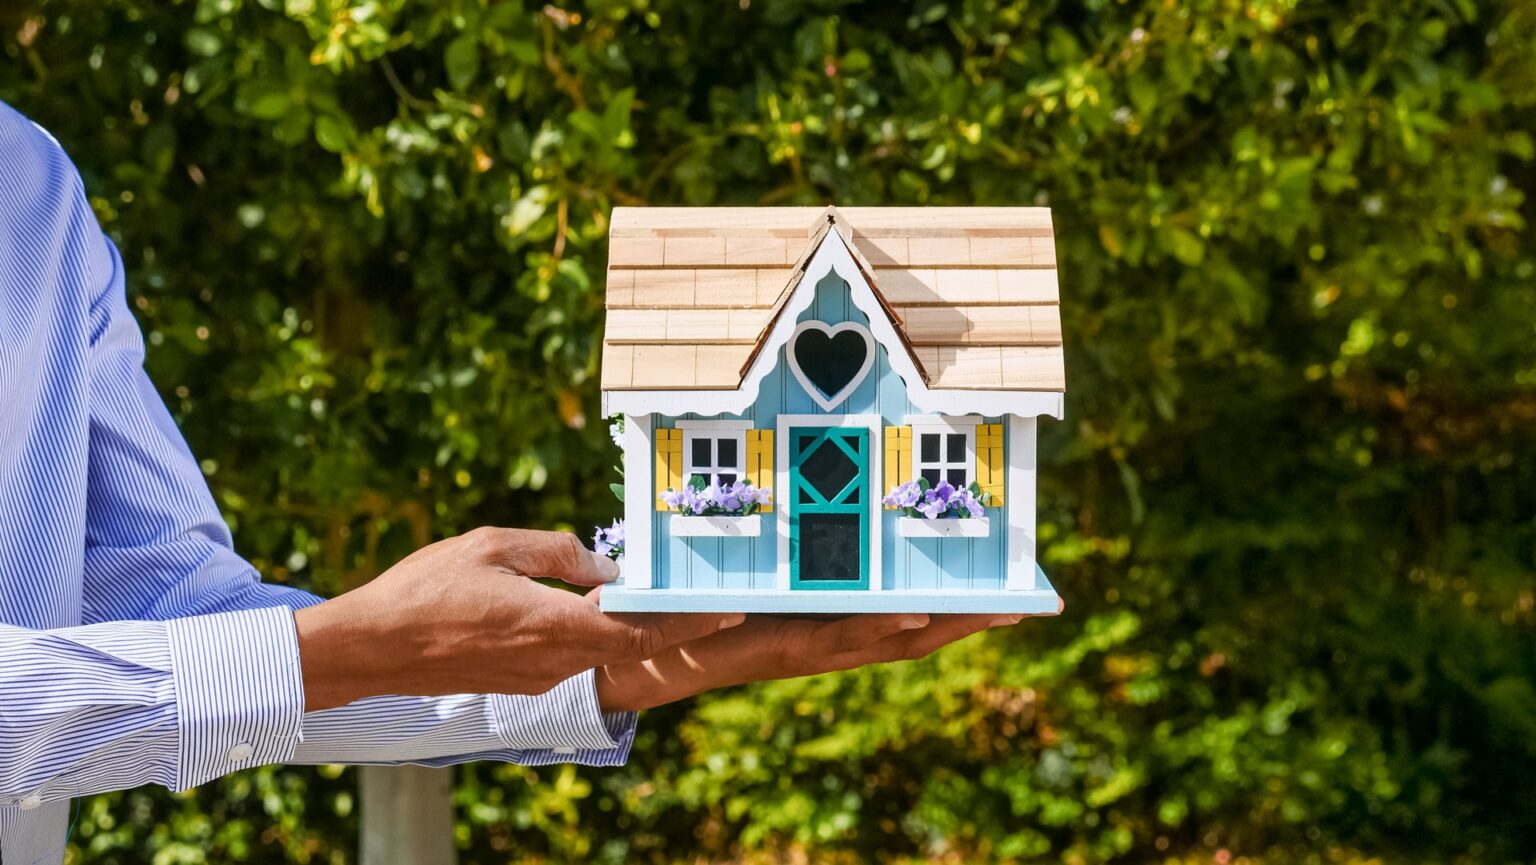 Agente inmobiliario con una casa de juguete en sus manos, simbolizando lo fácil que es comprar y vender bienes raíces con i-buyers